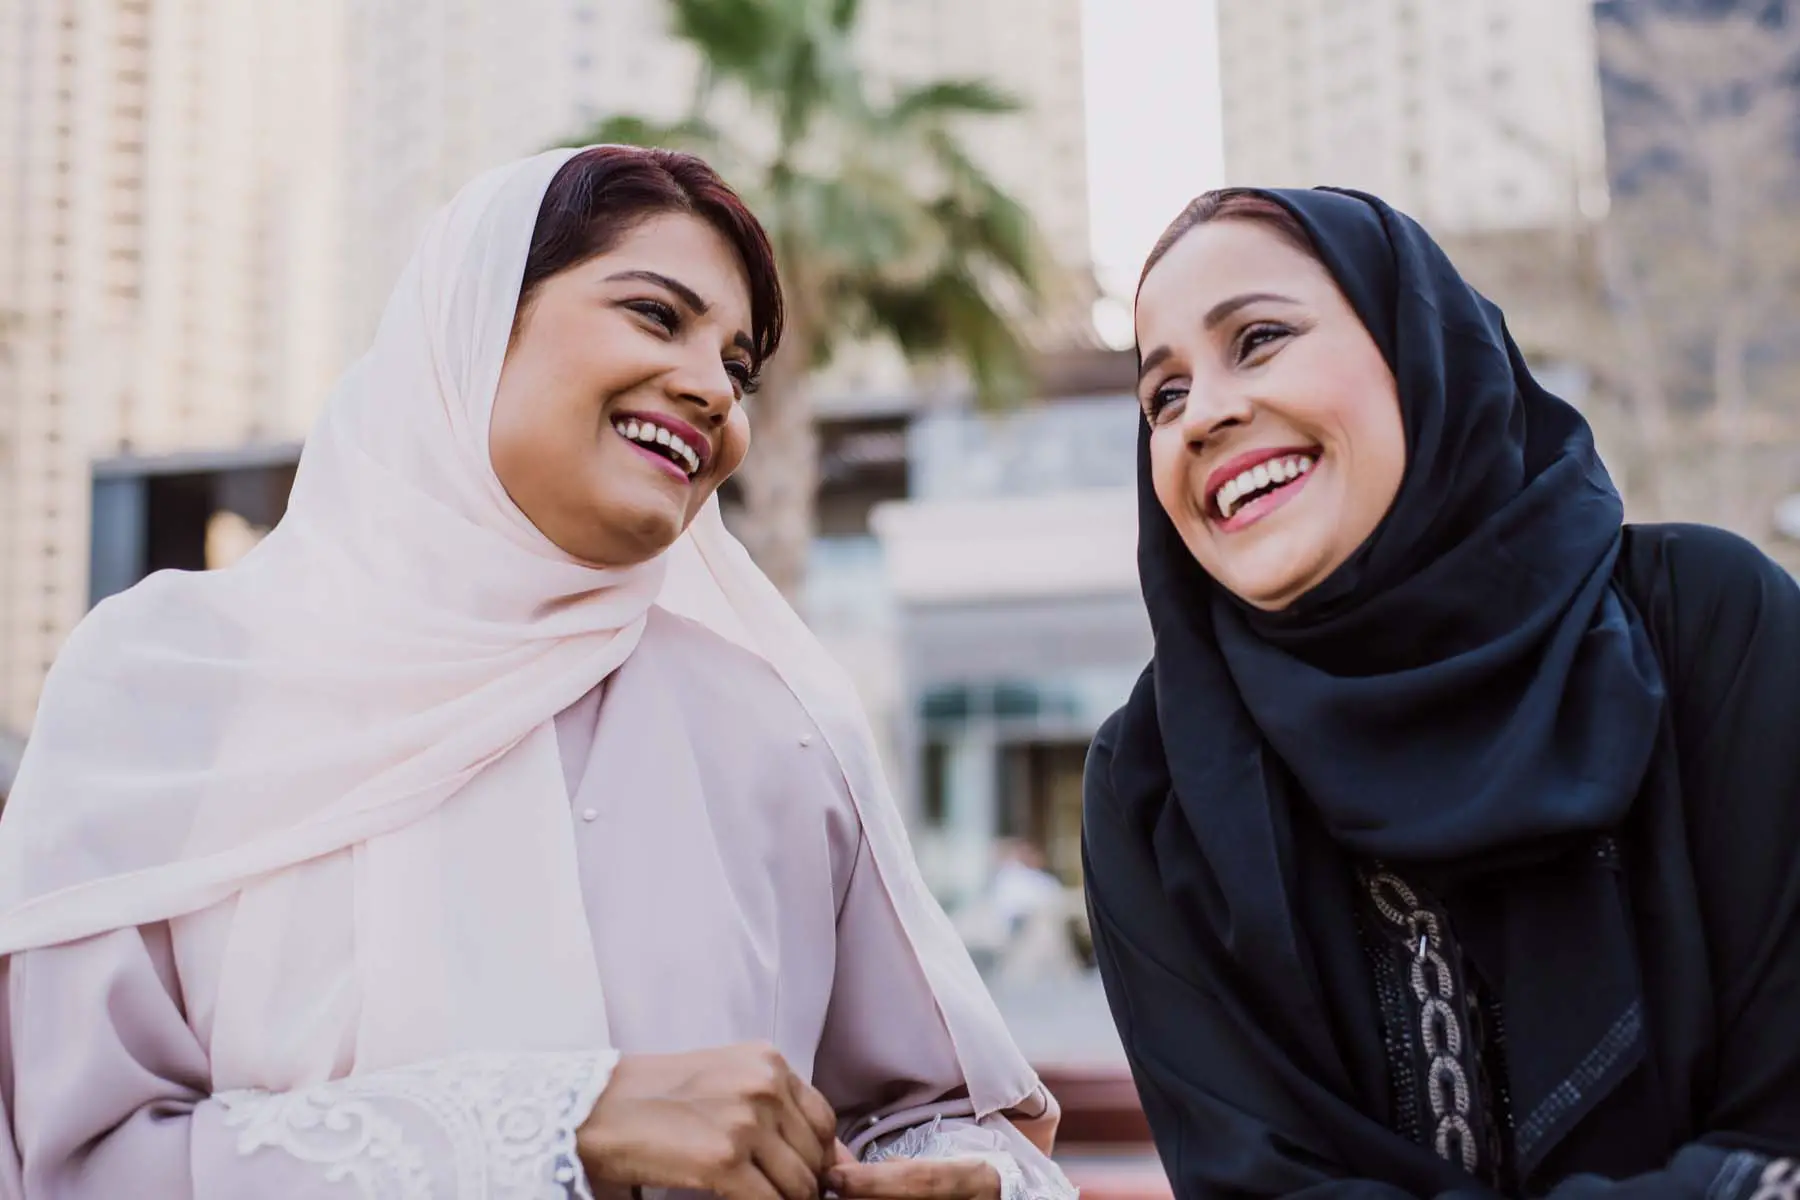 Qatari women chatting and smiling